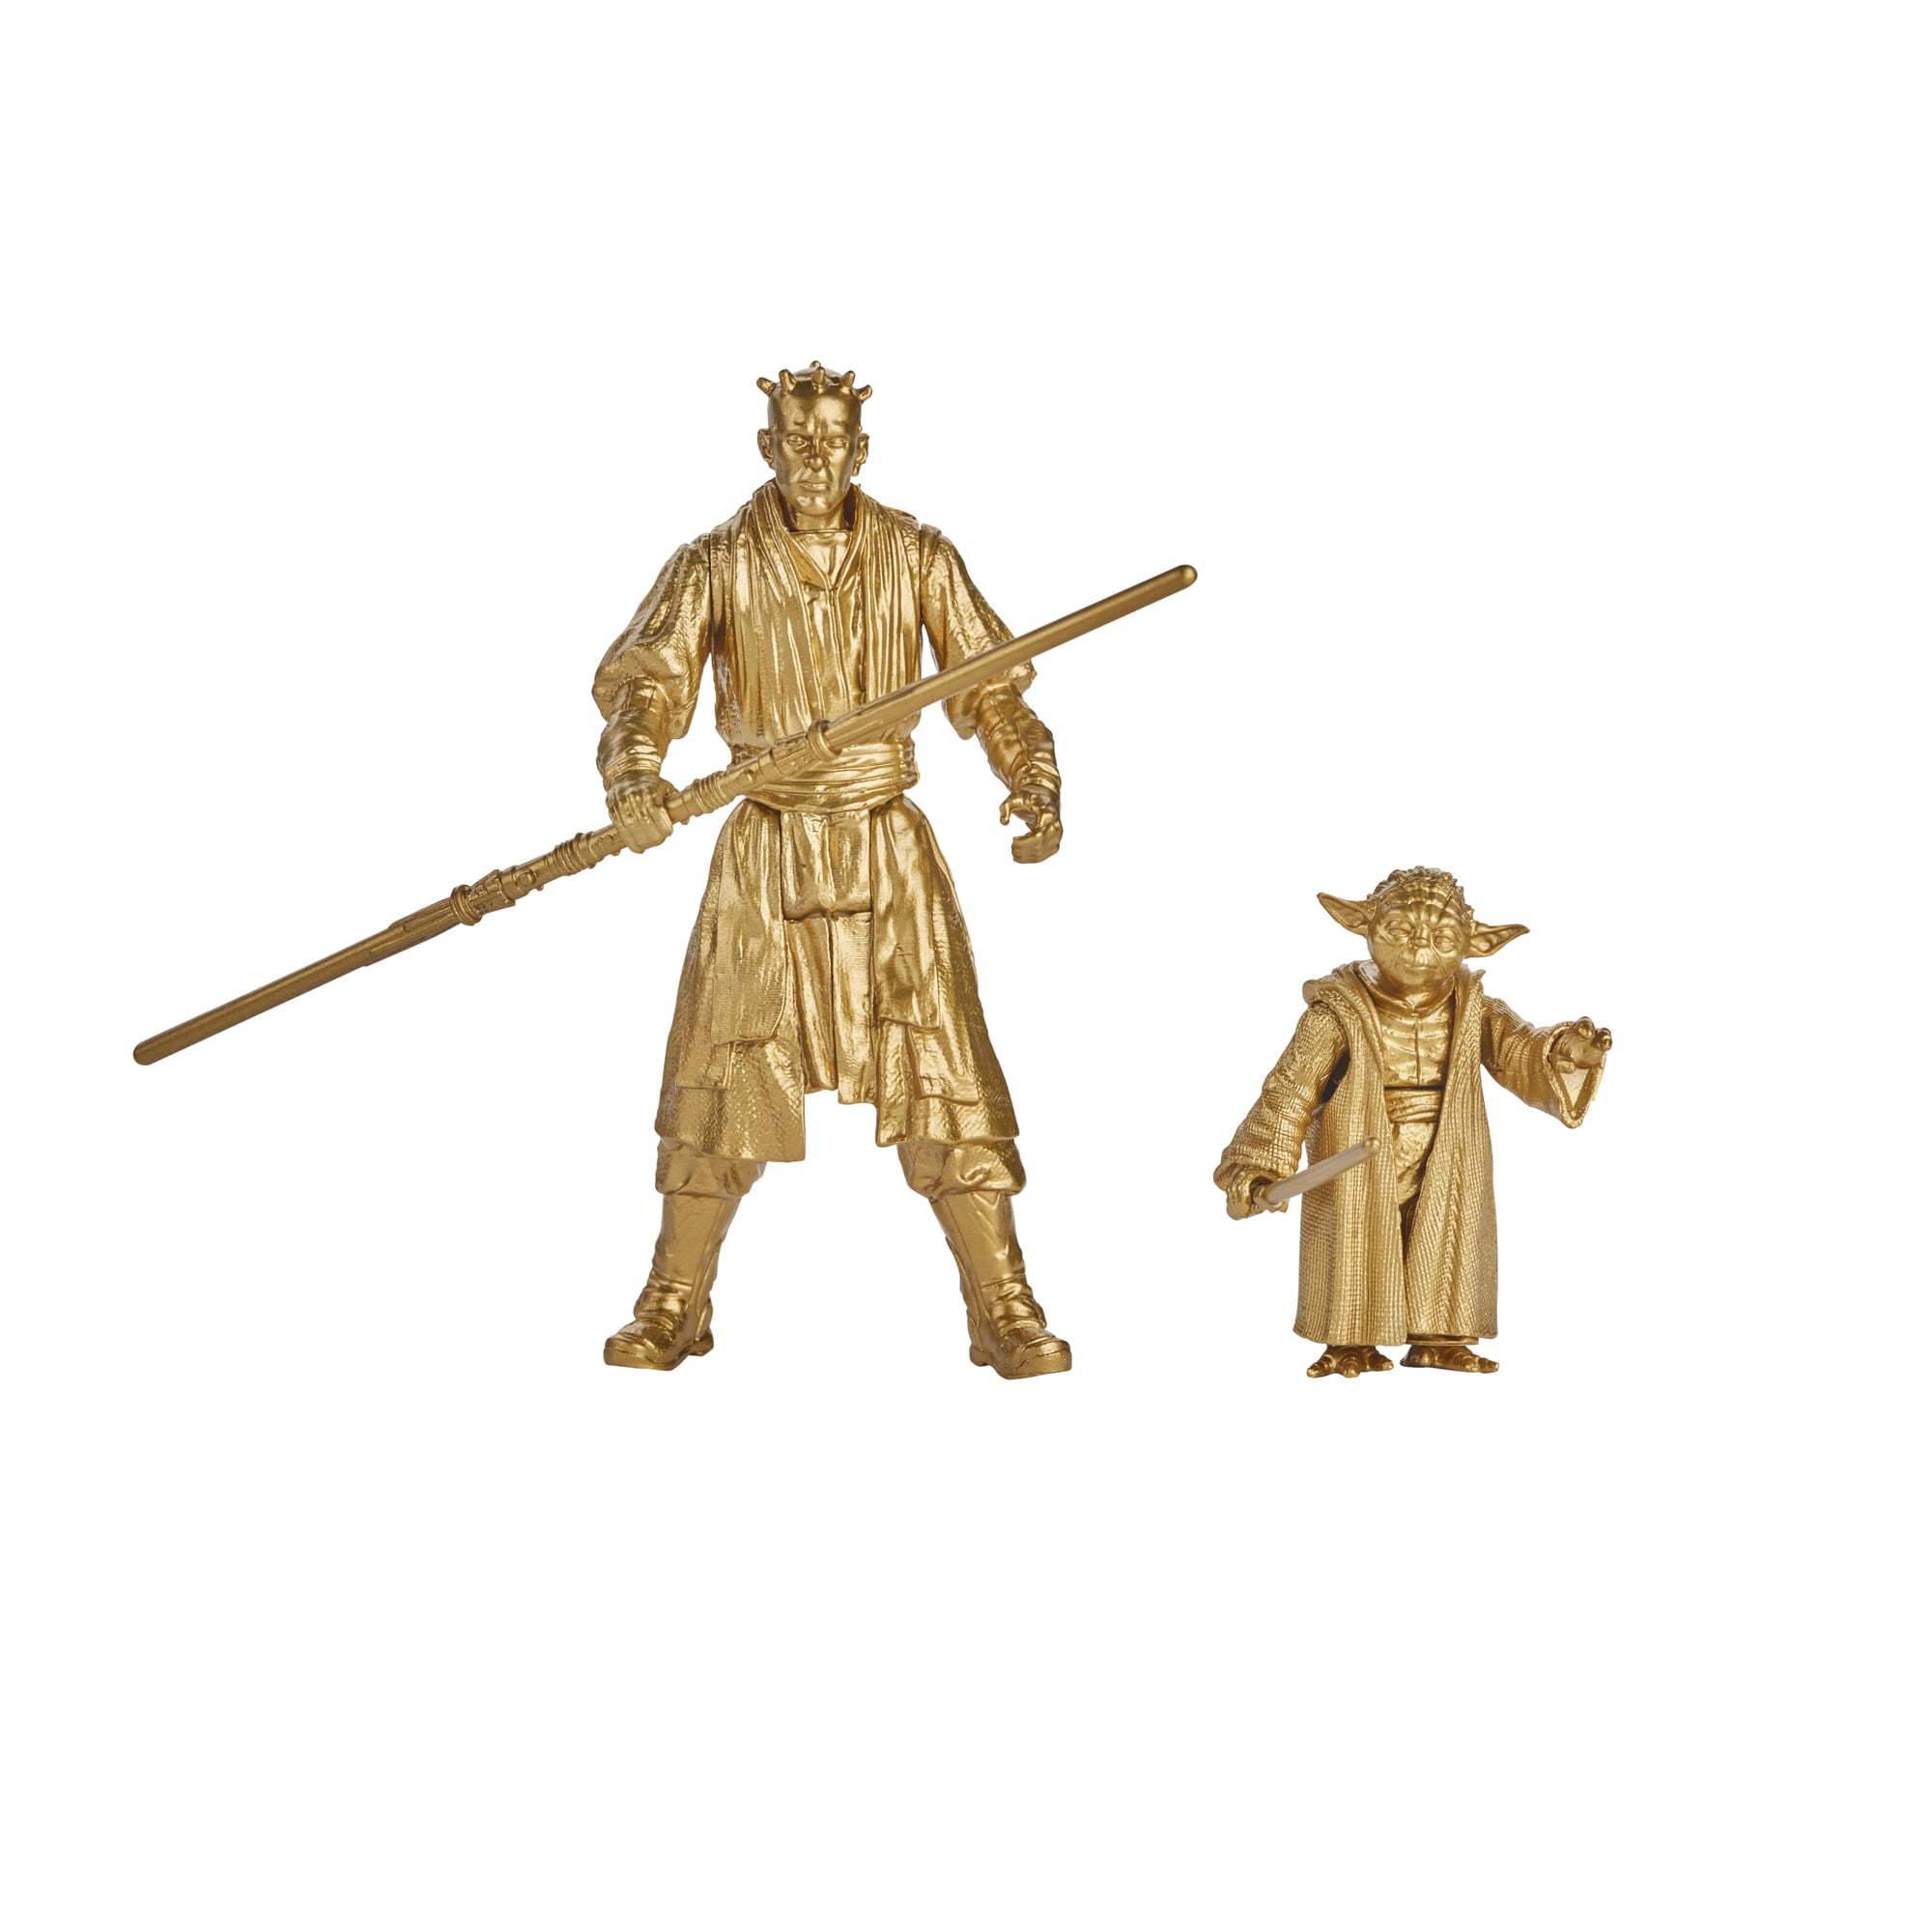 New Star Wars Darth Maul /& Yoda Figure Gold Skywalker Commemorative Edition